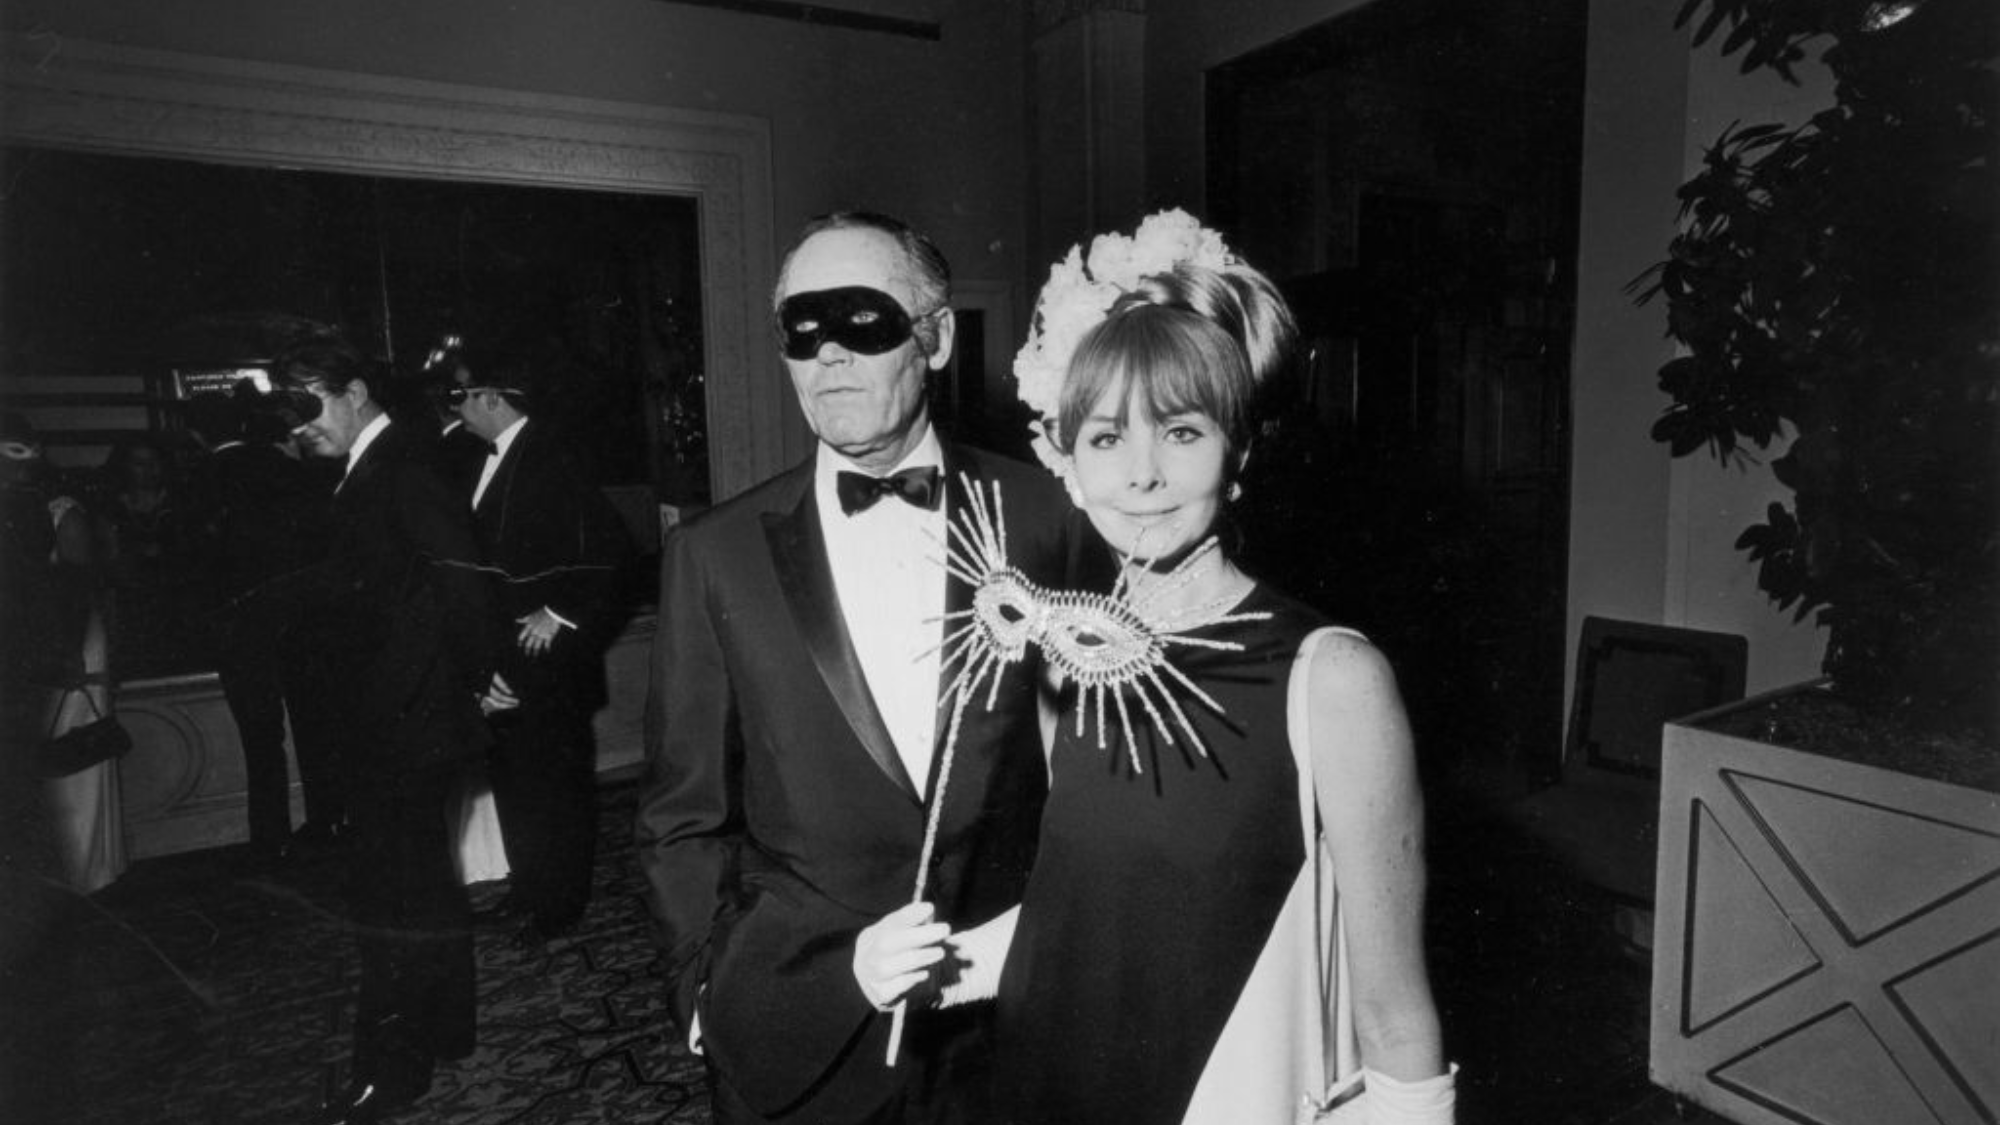 هنری فوندا و همسرش شرلی می آدامز در توپ سیاه و سفید در سال 1966، هر دو ماسک چشم داشتند.